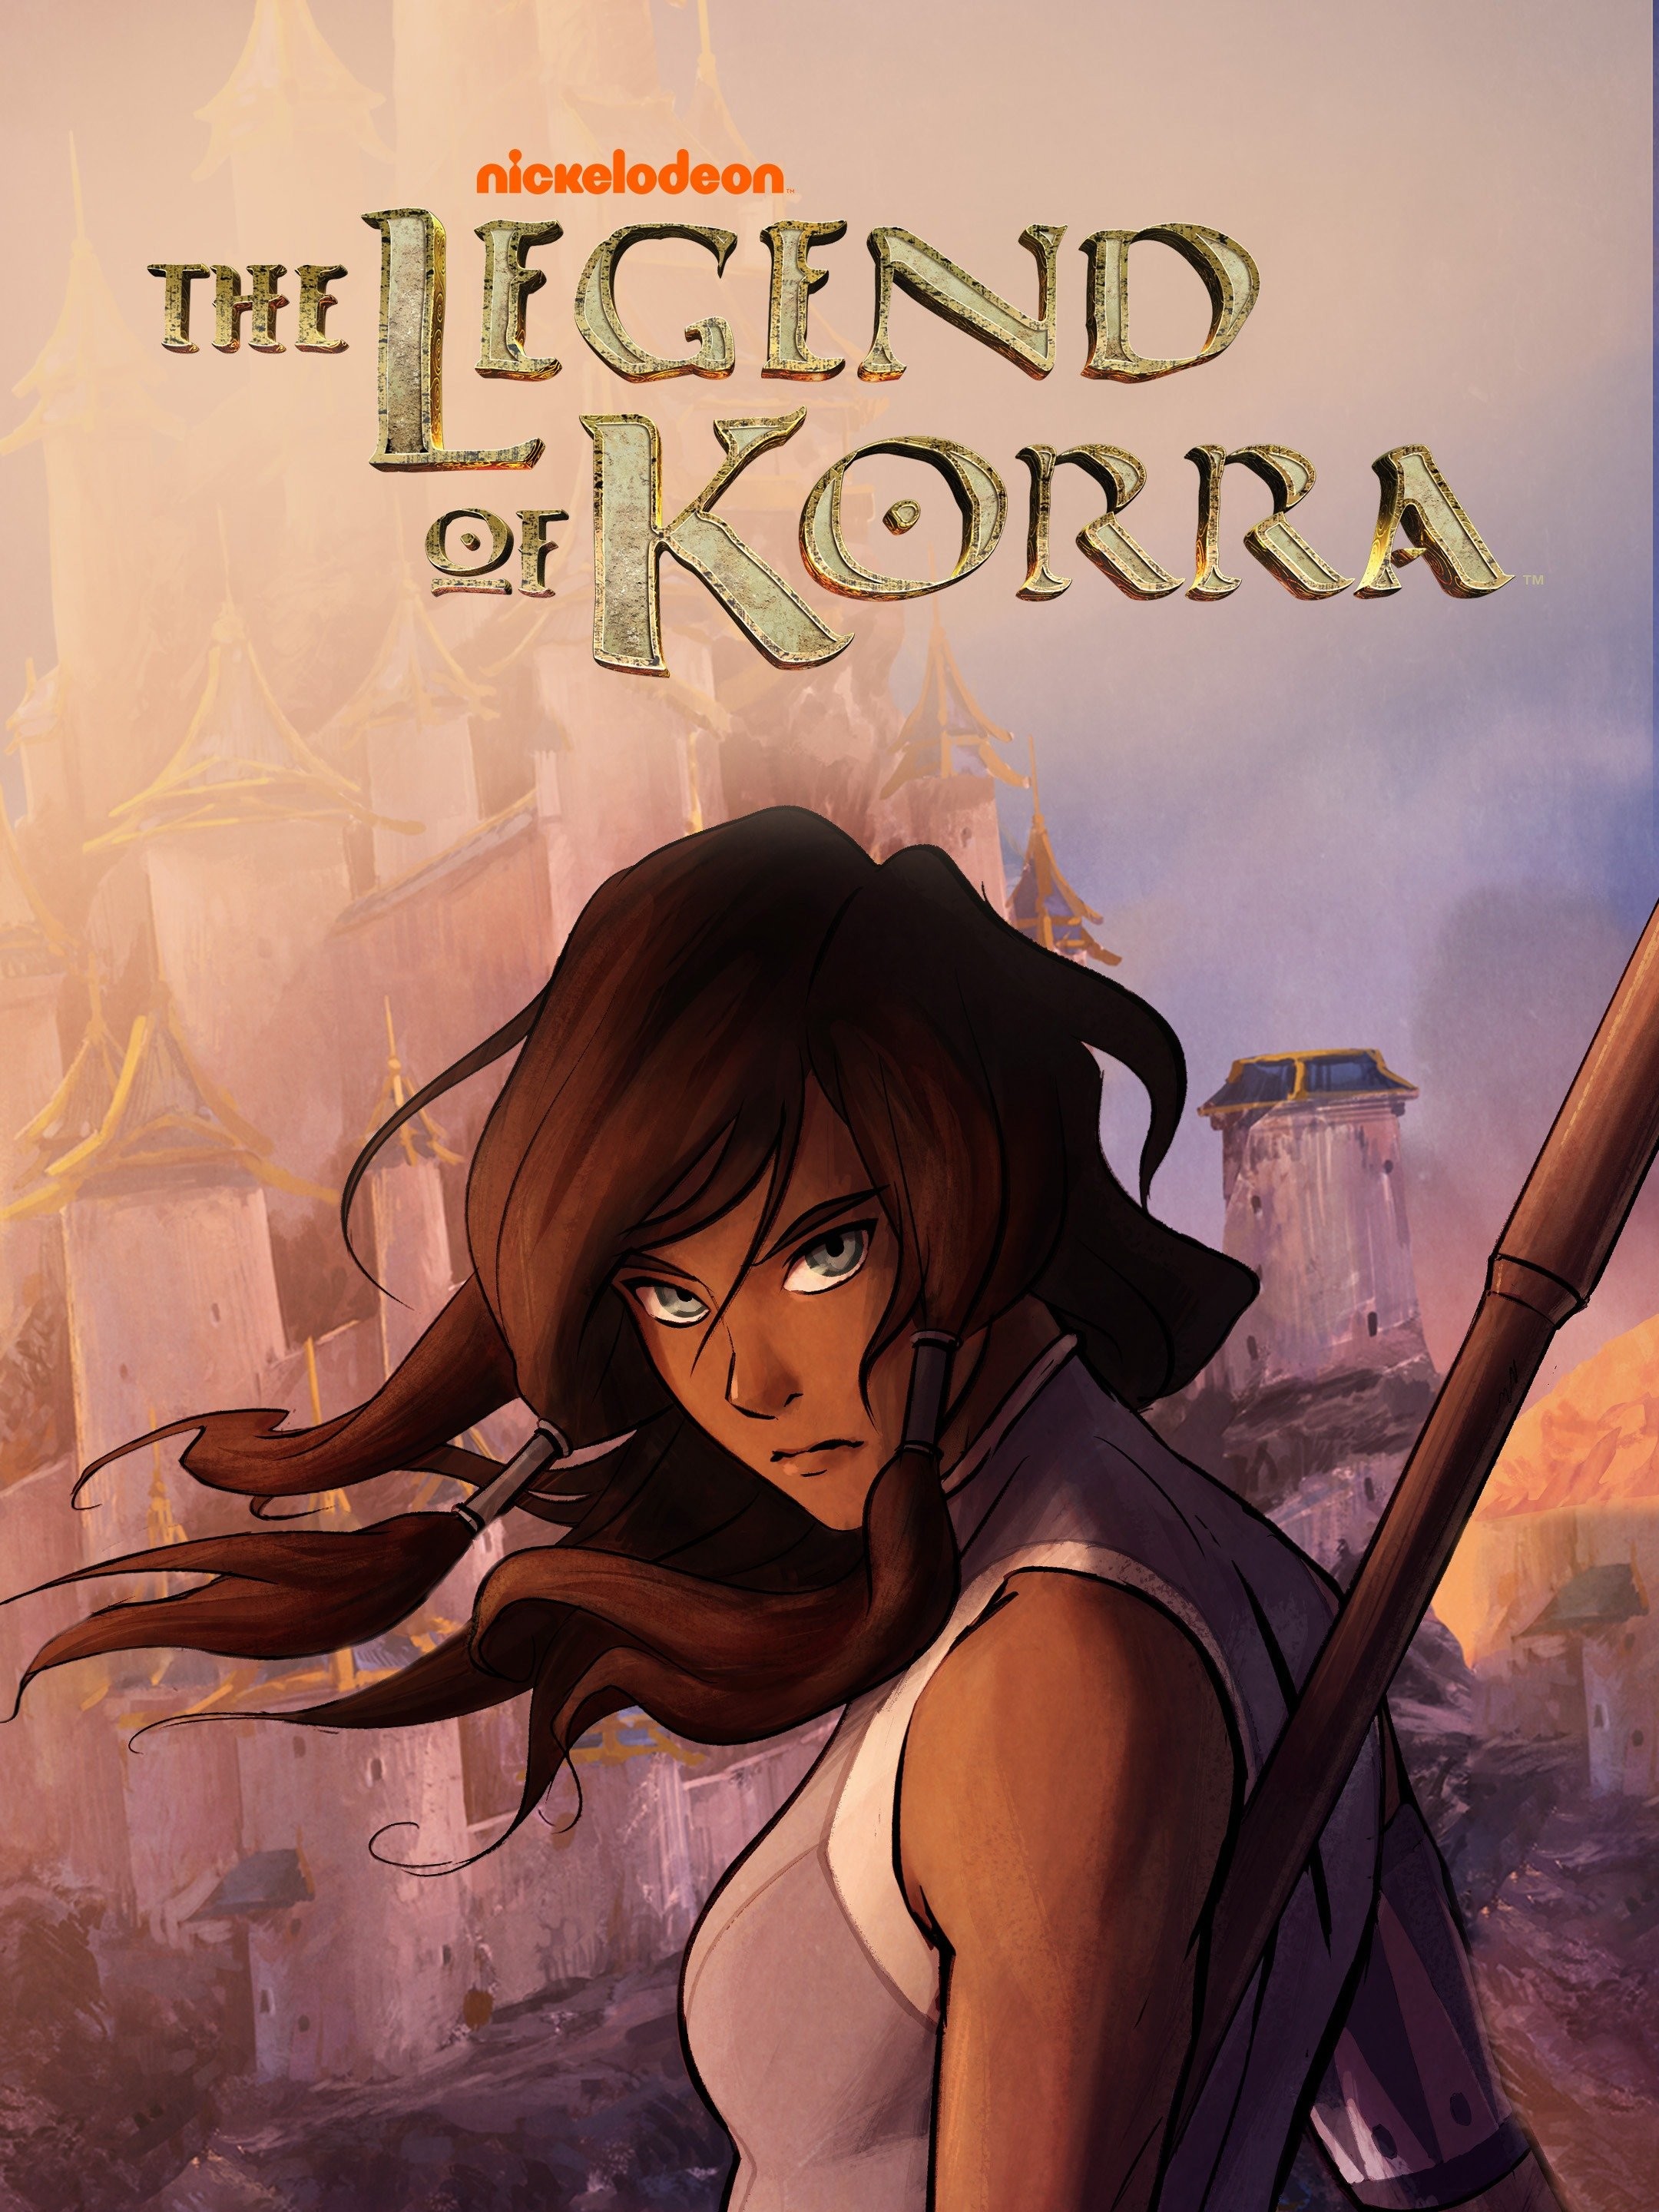 The Tales of Ba Sing Se  Legend of korra, Korra, Korra avatar